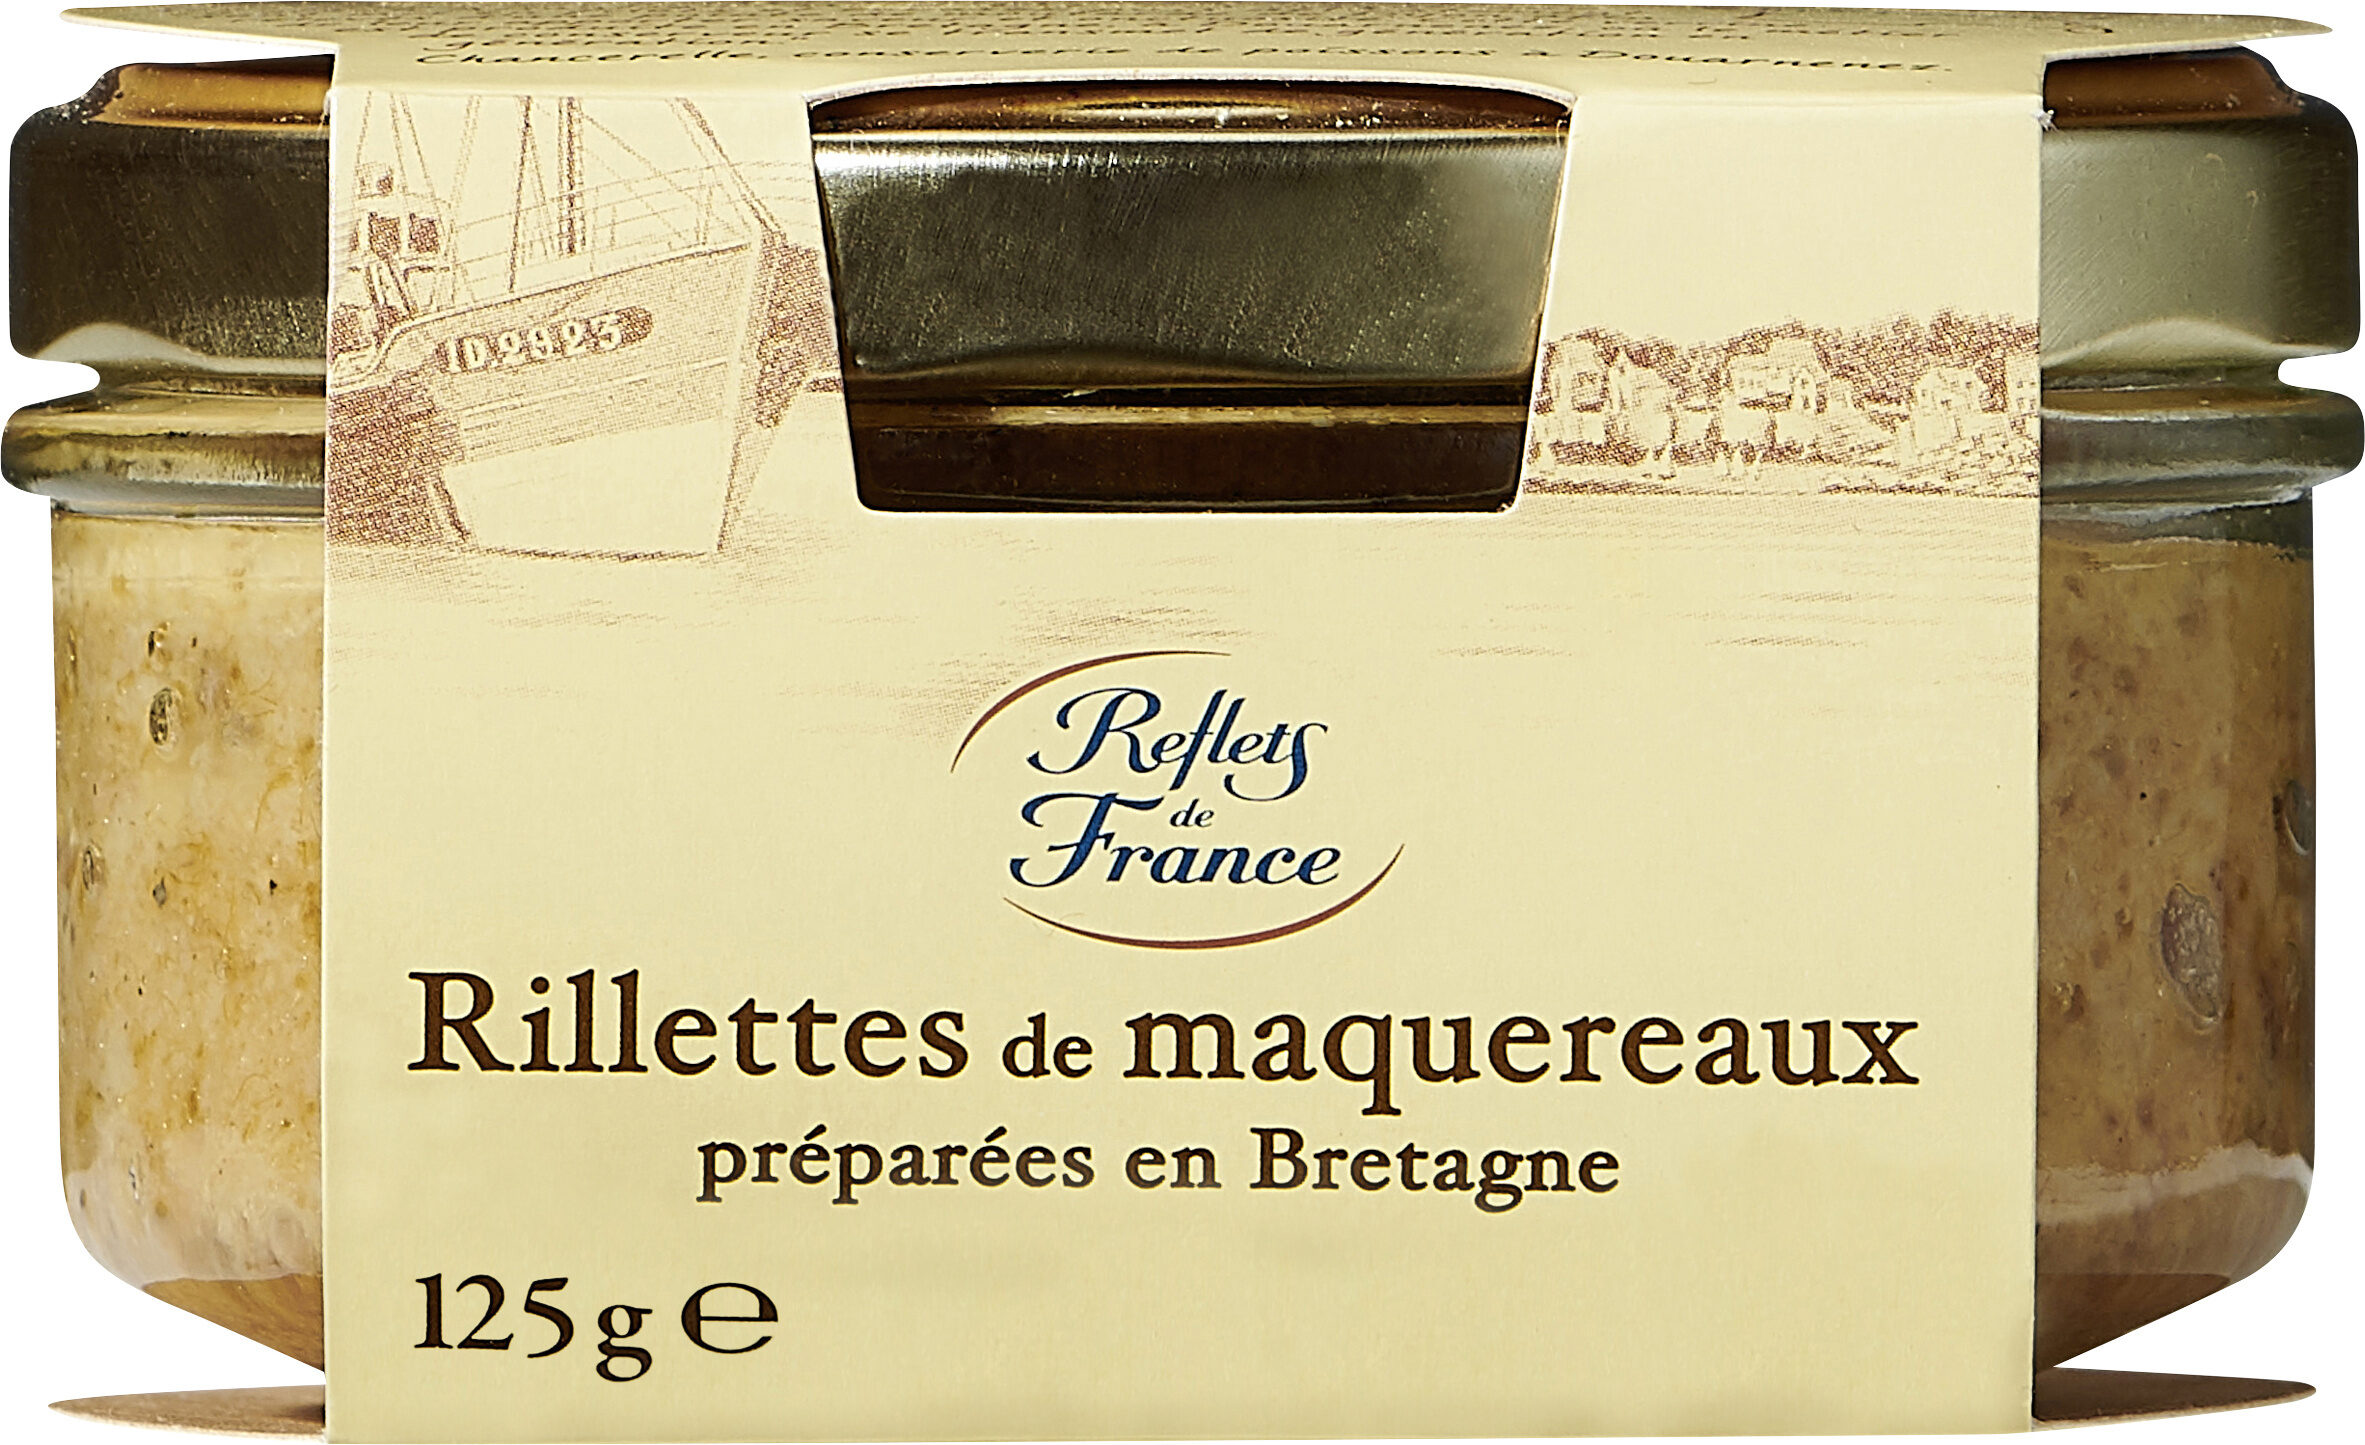 Rillettes de maquereaux préparées en Bretagne - Product - fr